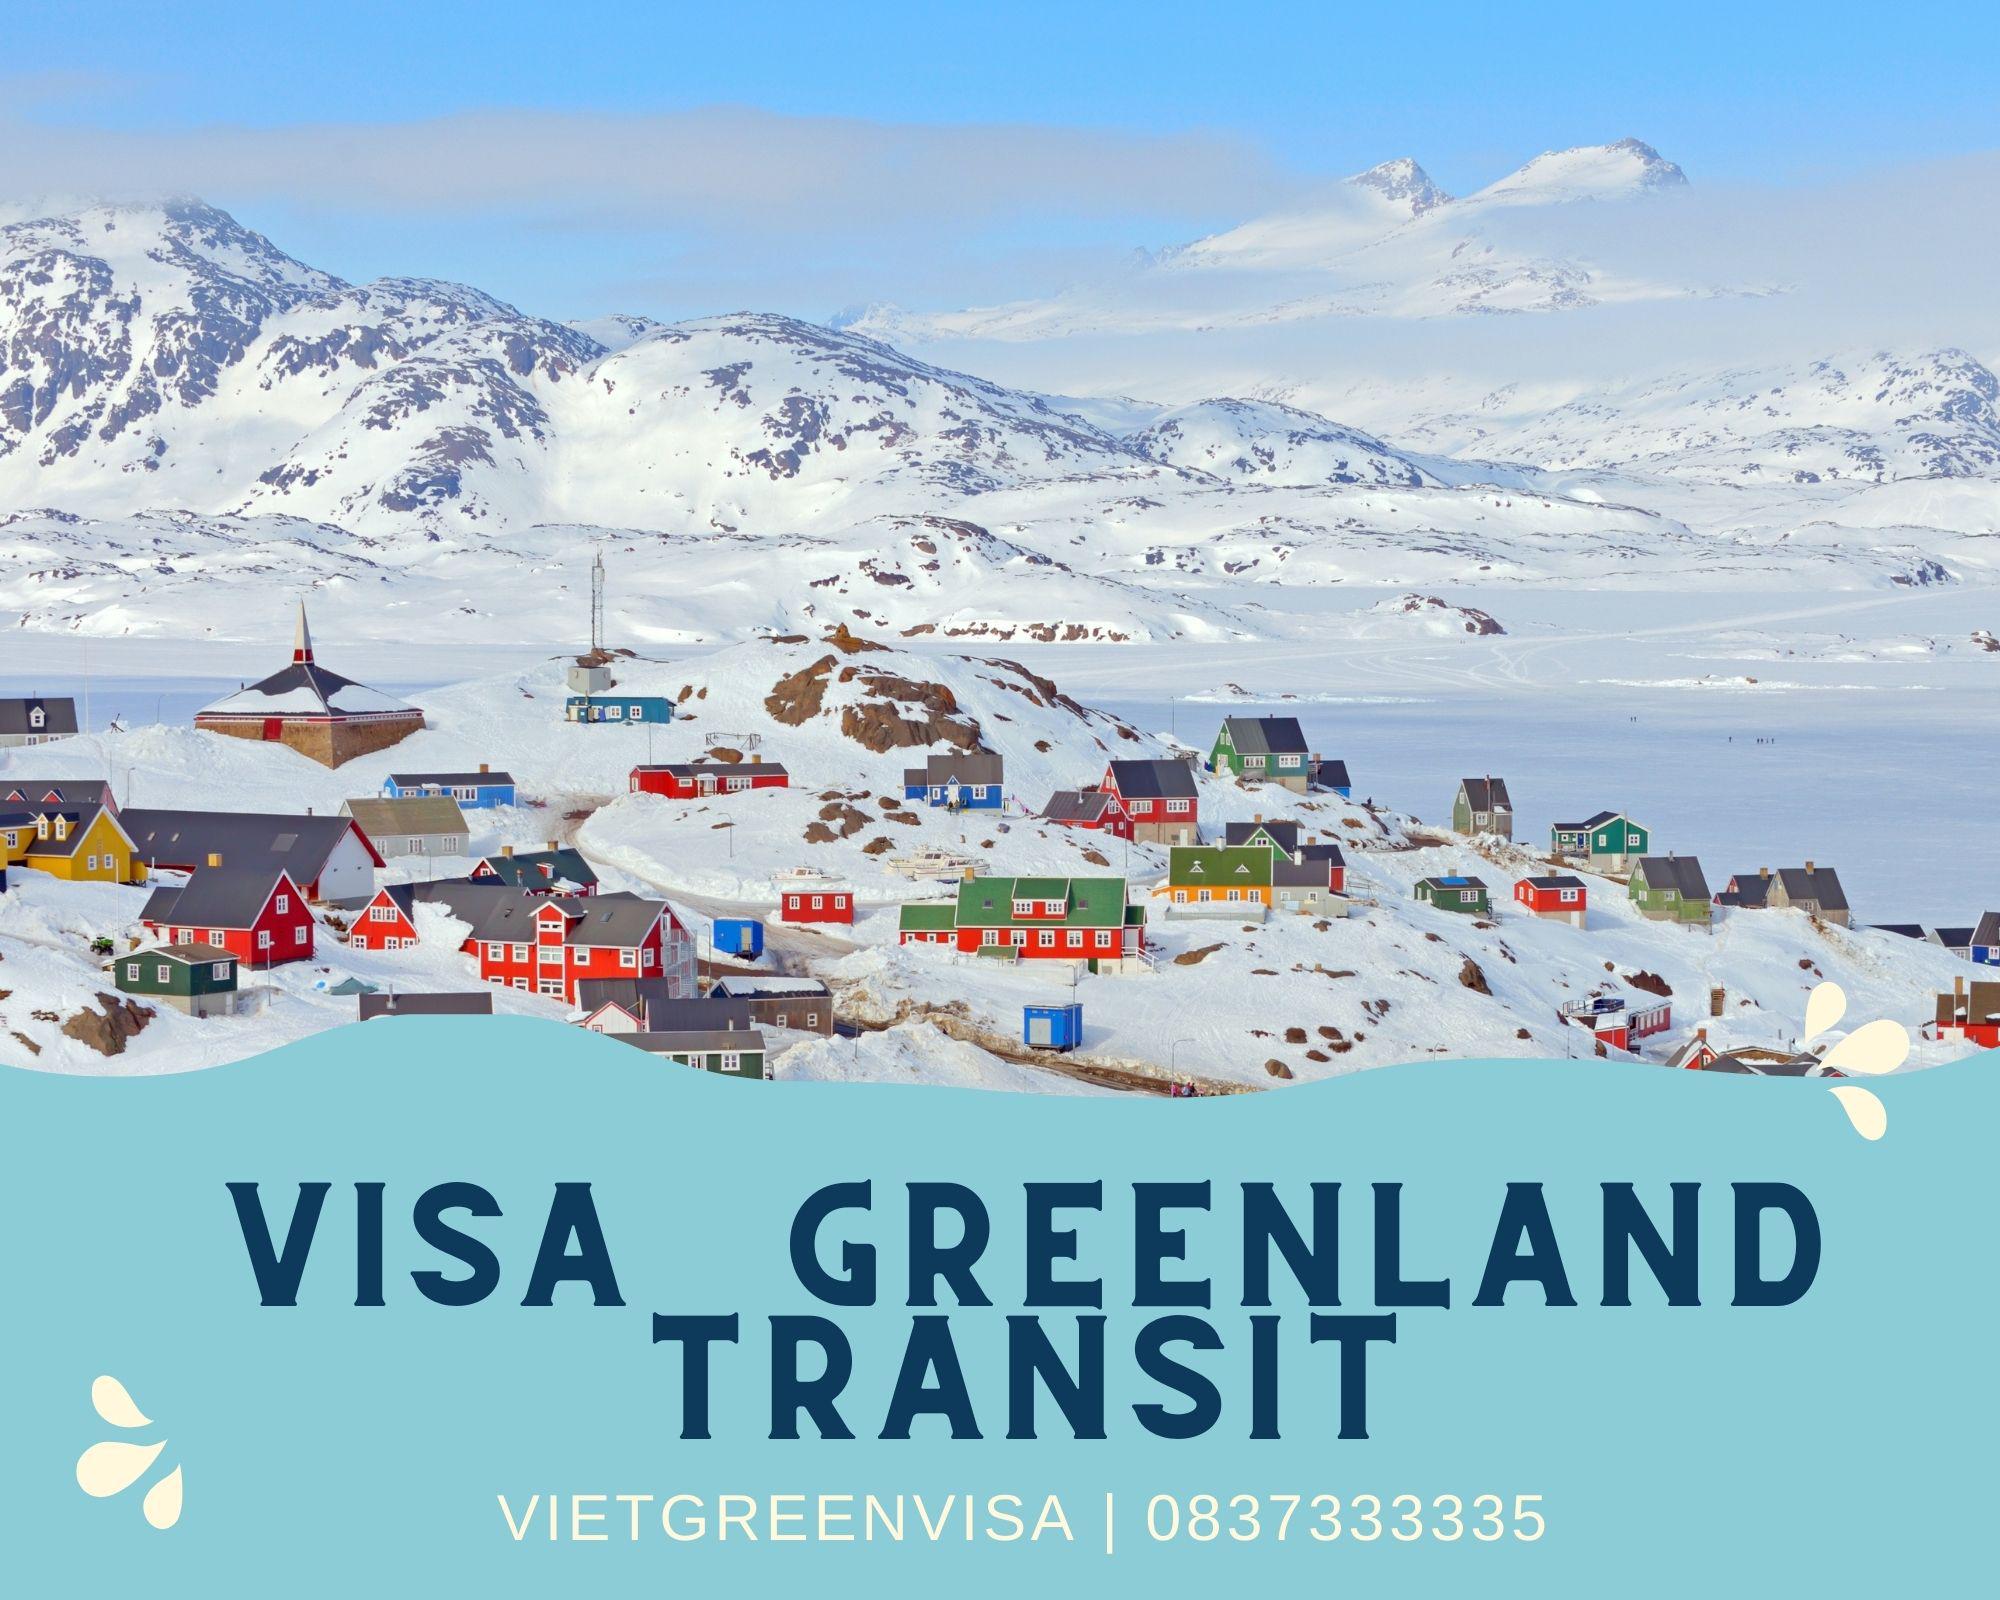 Dịch vụ xin visa quá cảnh qua Greenland uy tín